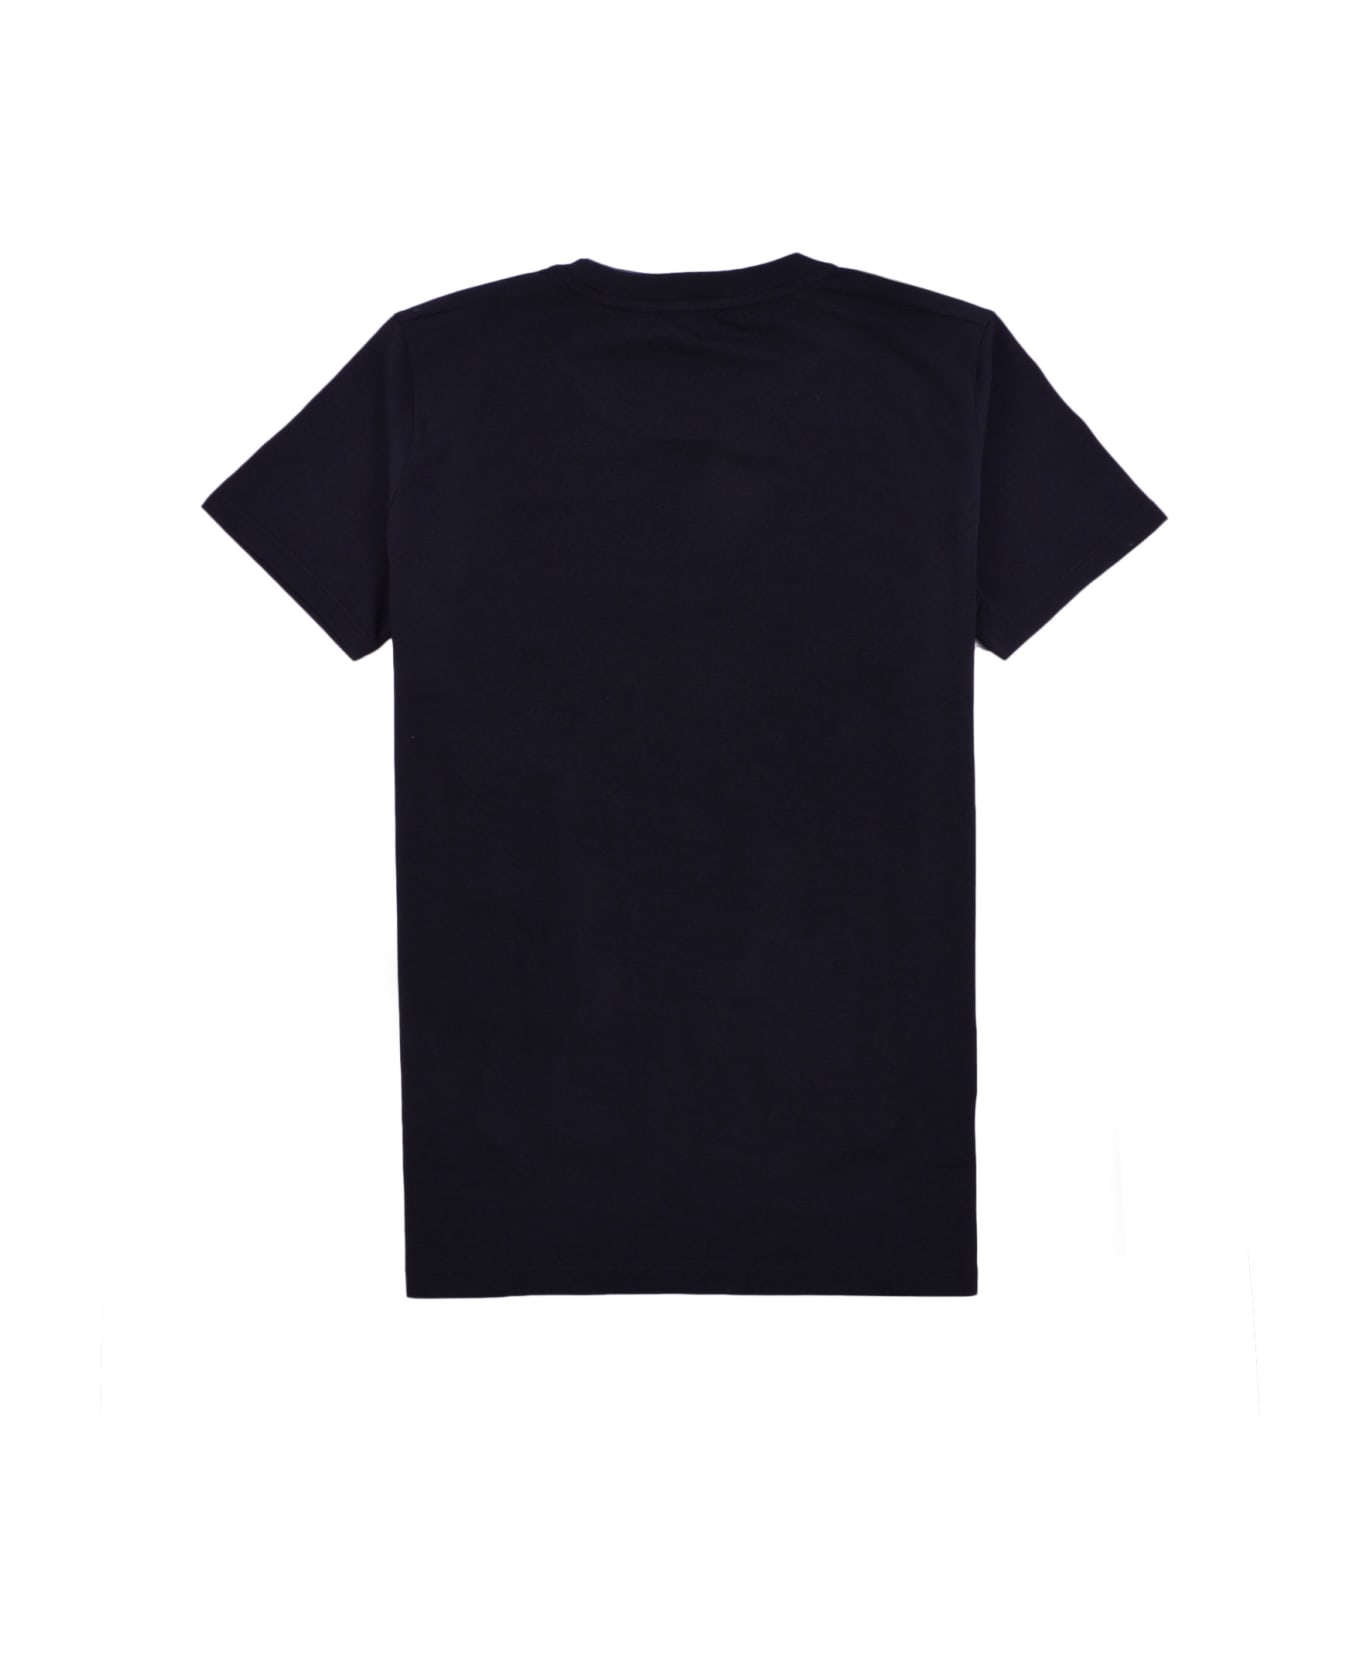 RRD - Roberto Ricci Design T-shirt - Black シャツ